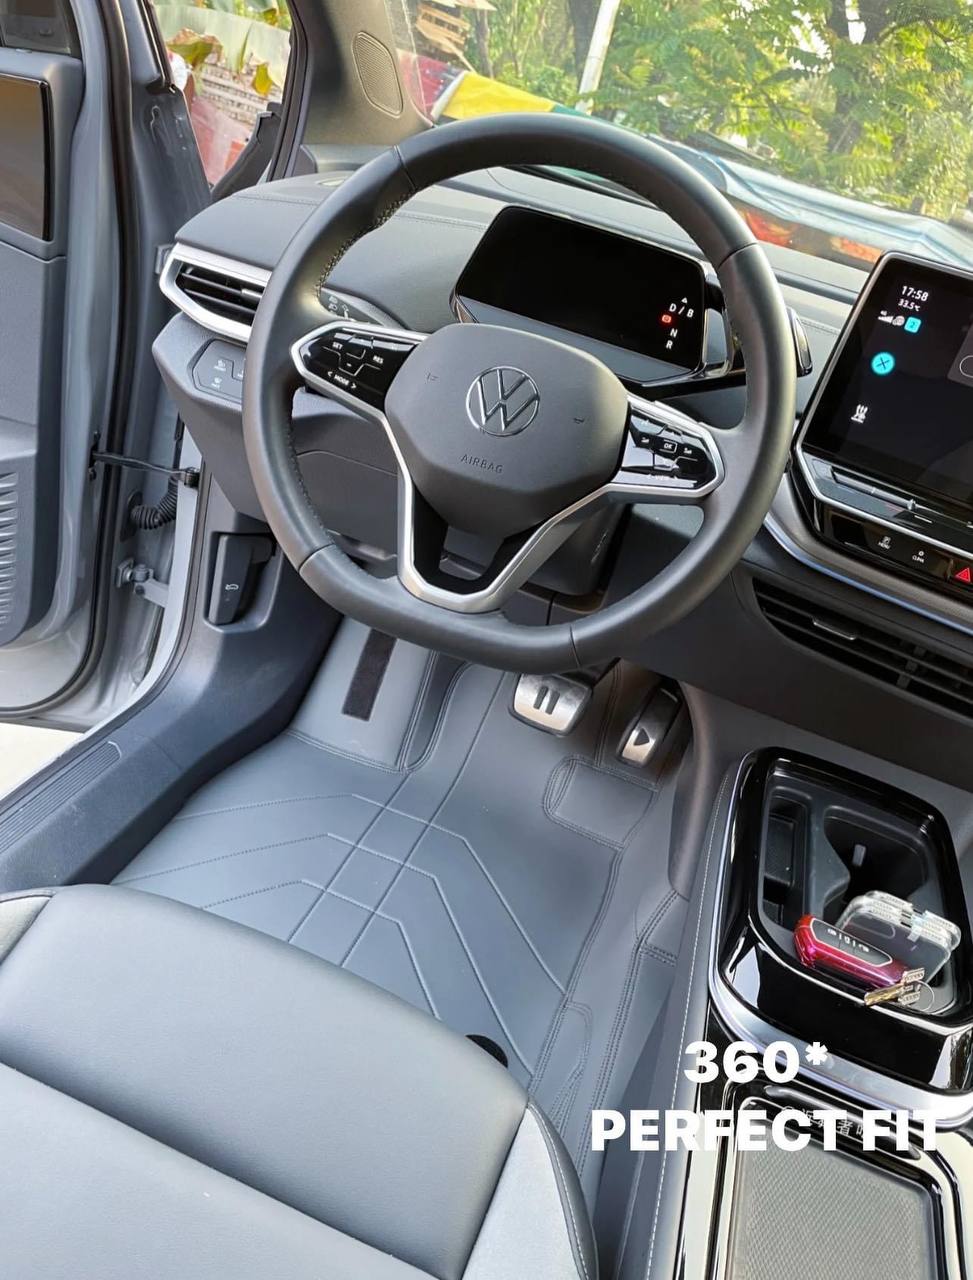 Volkswagen ID. series ID3 ID4 ID5 ID6 – CARLUX ACCESSORIES